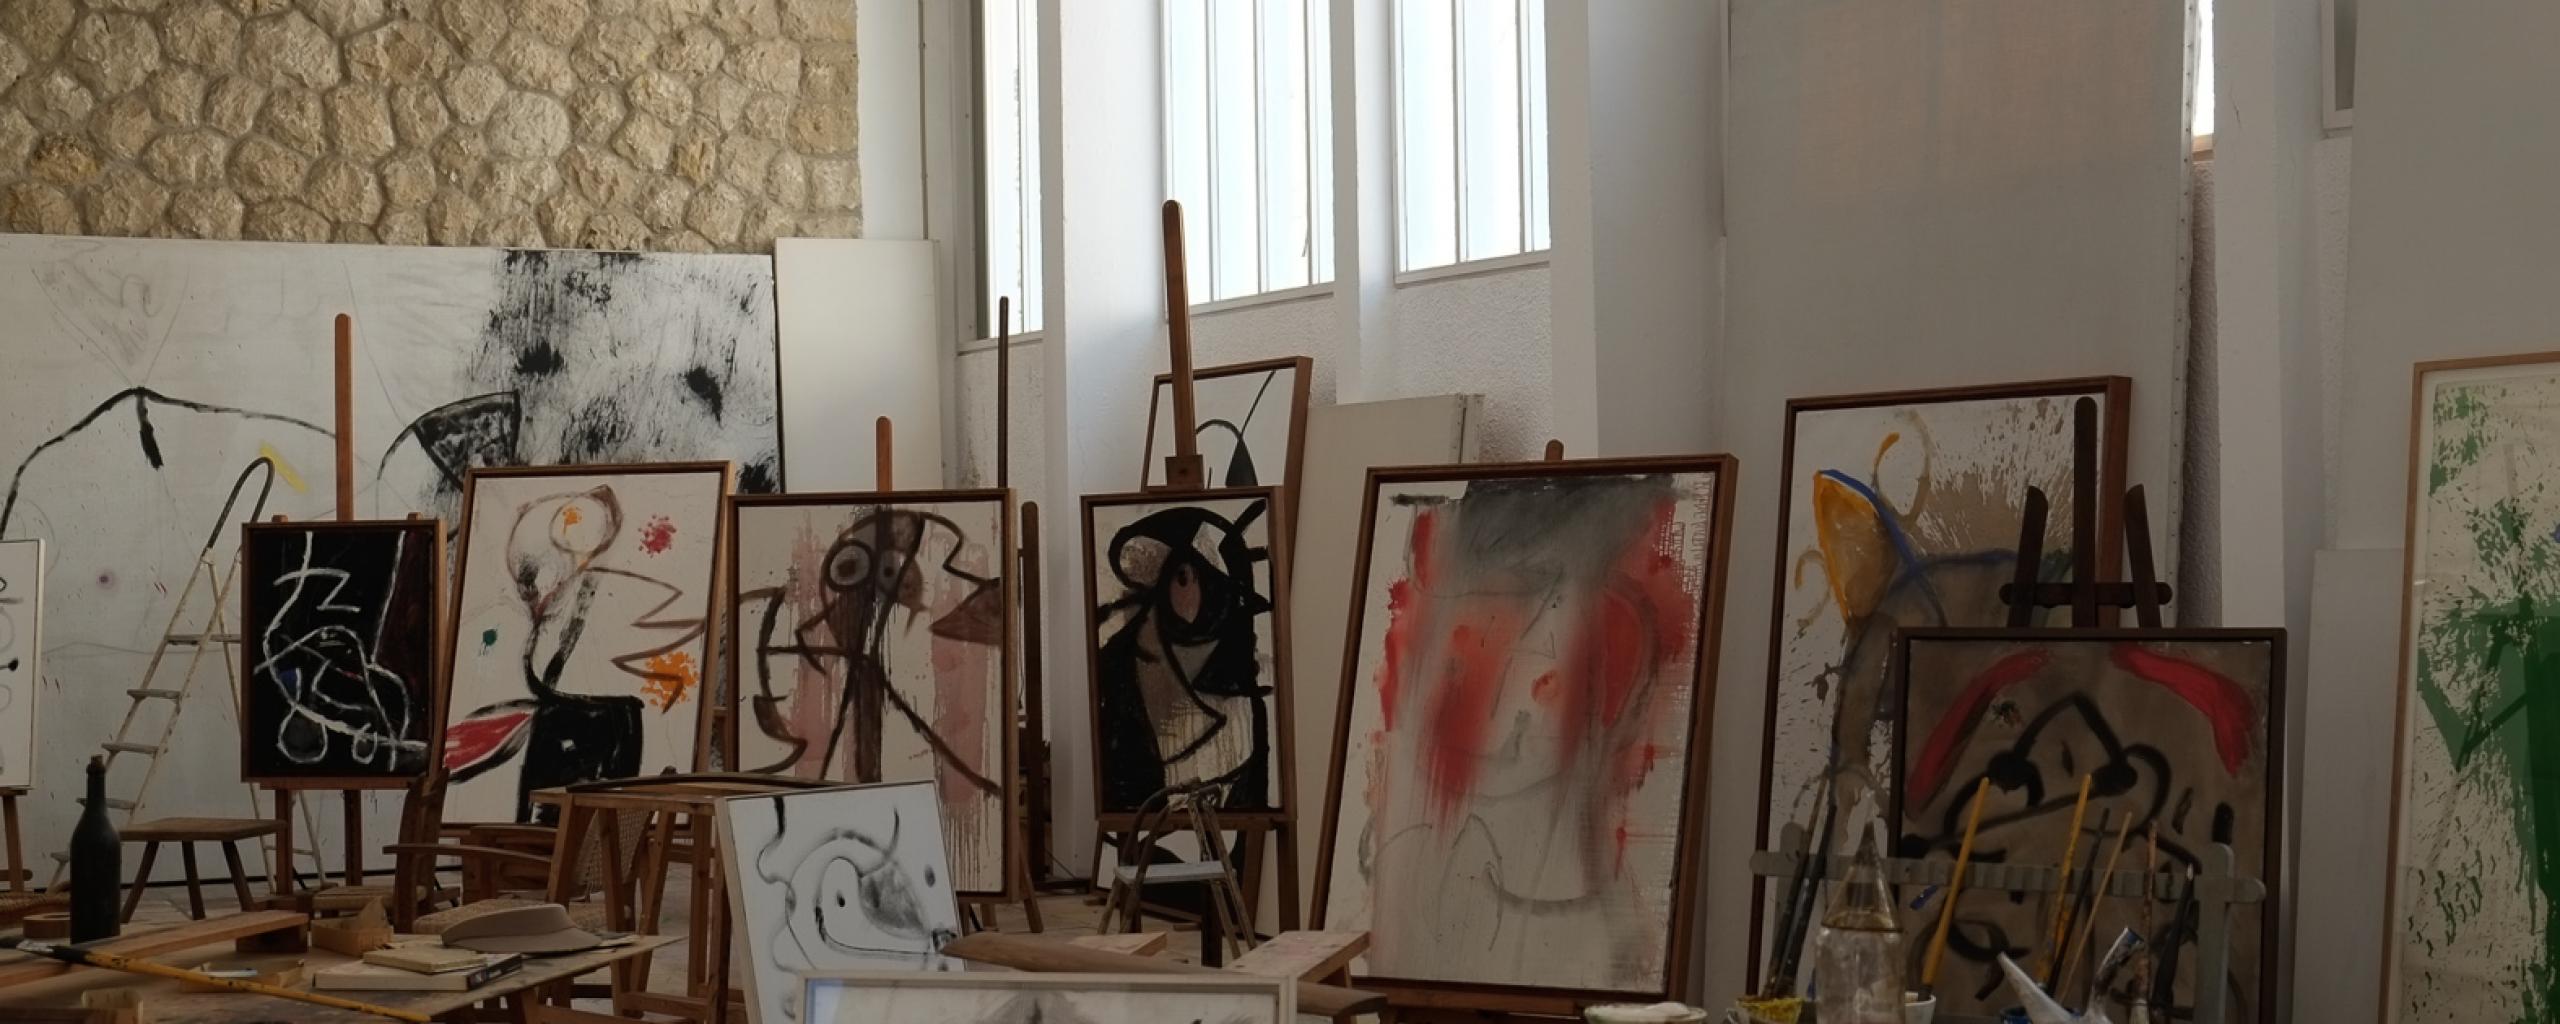 Fundació Pilar i Joan Miro a Mallorca